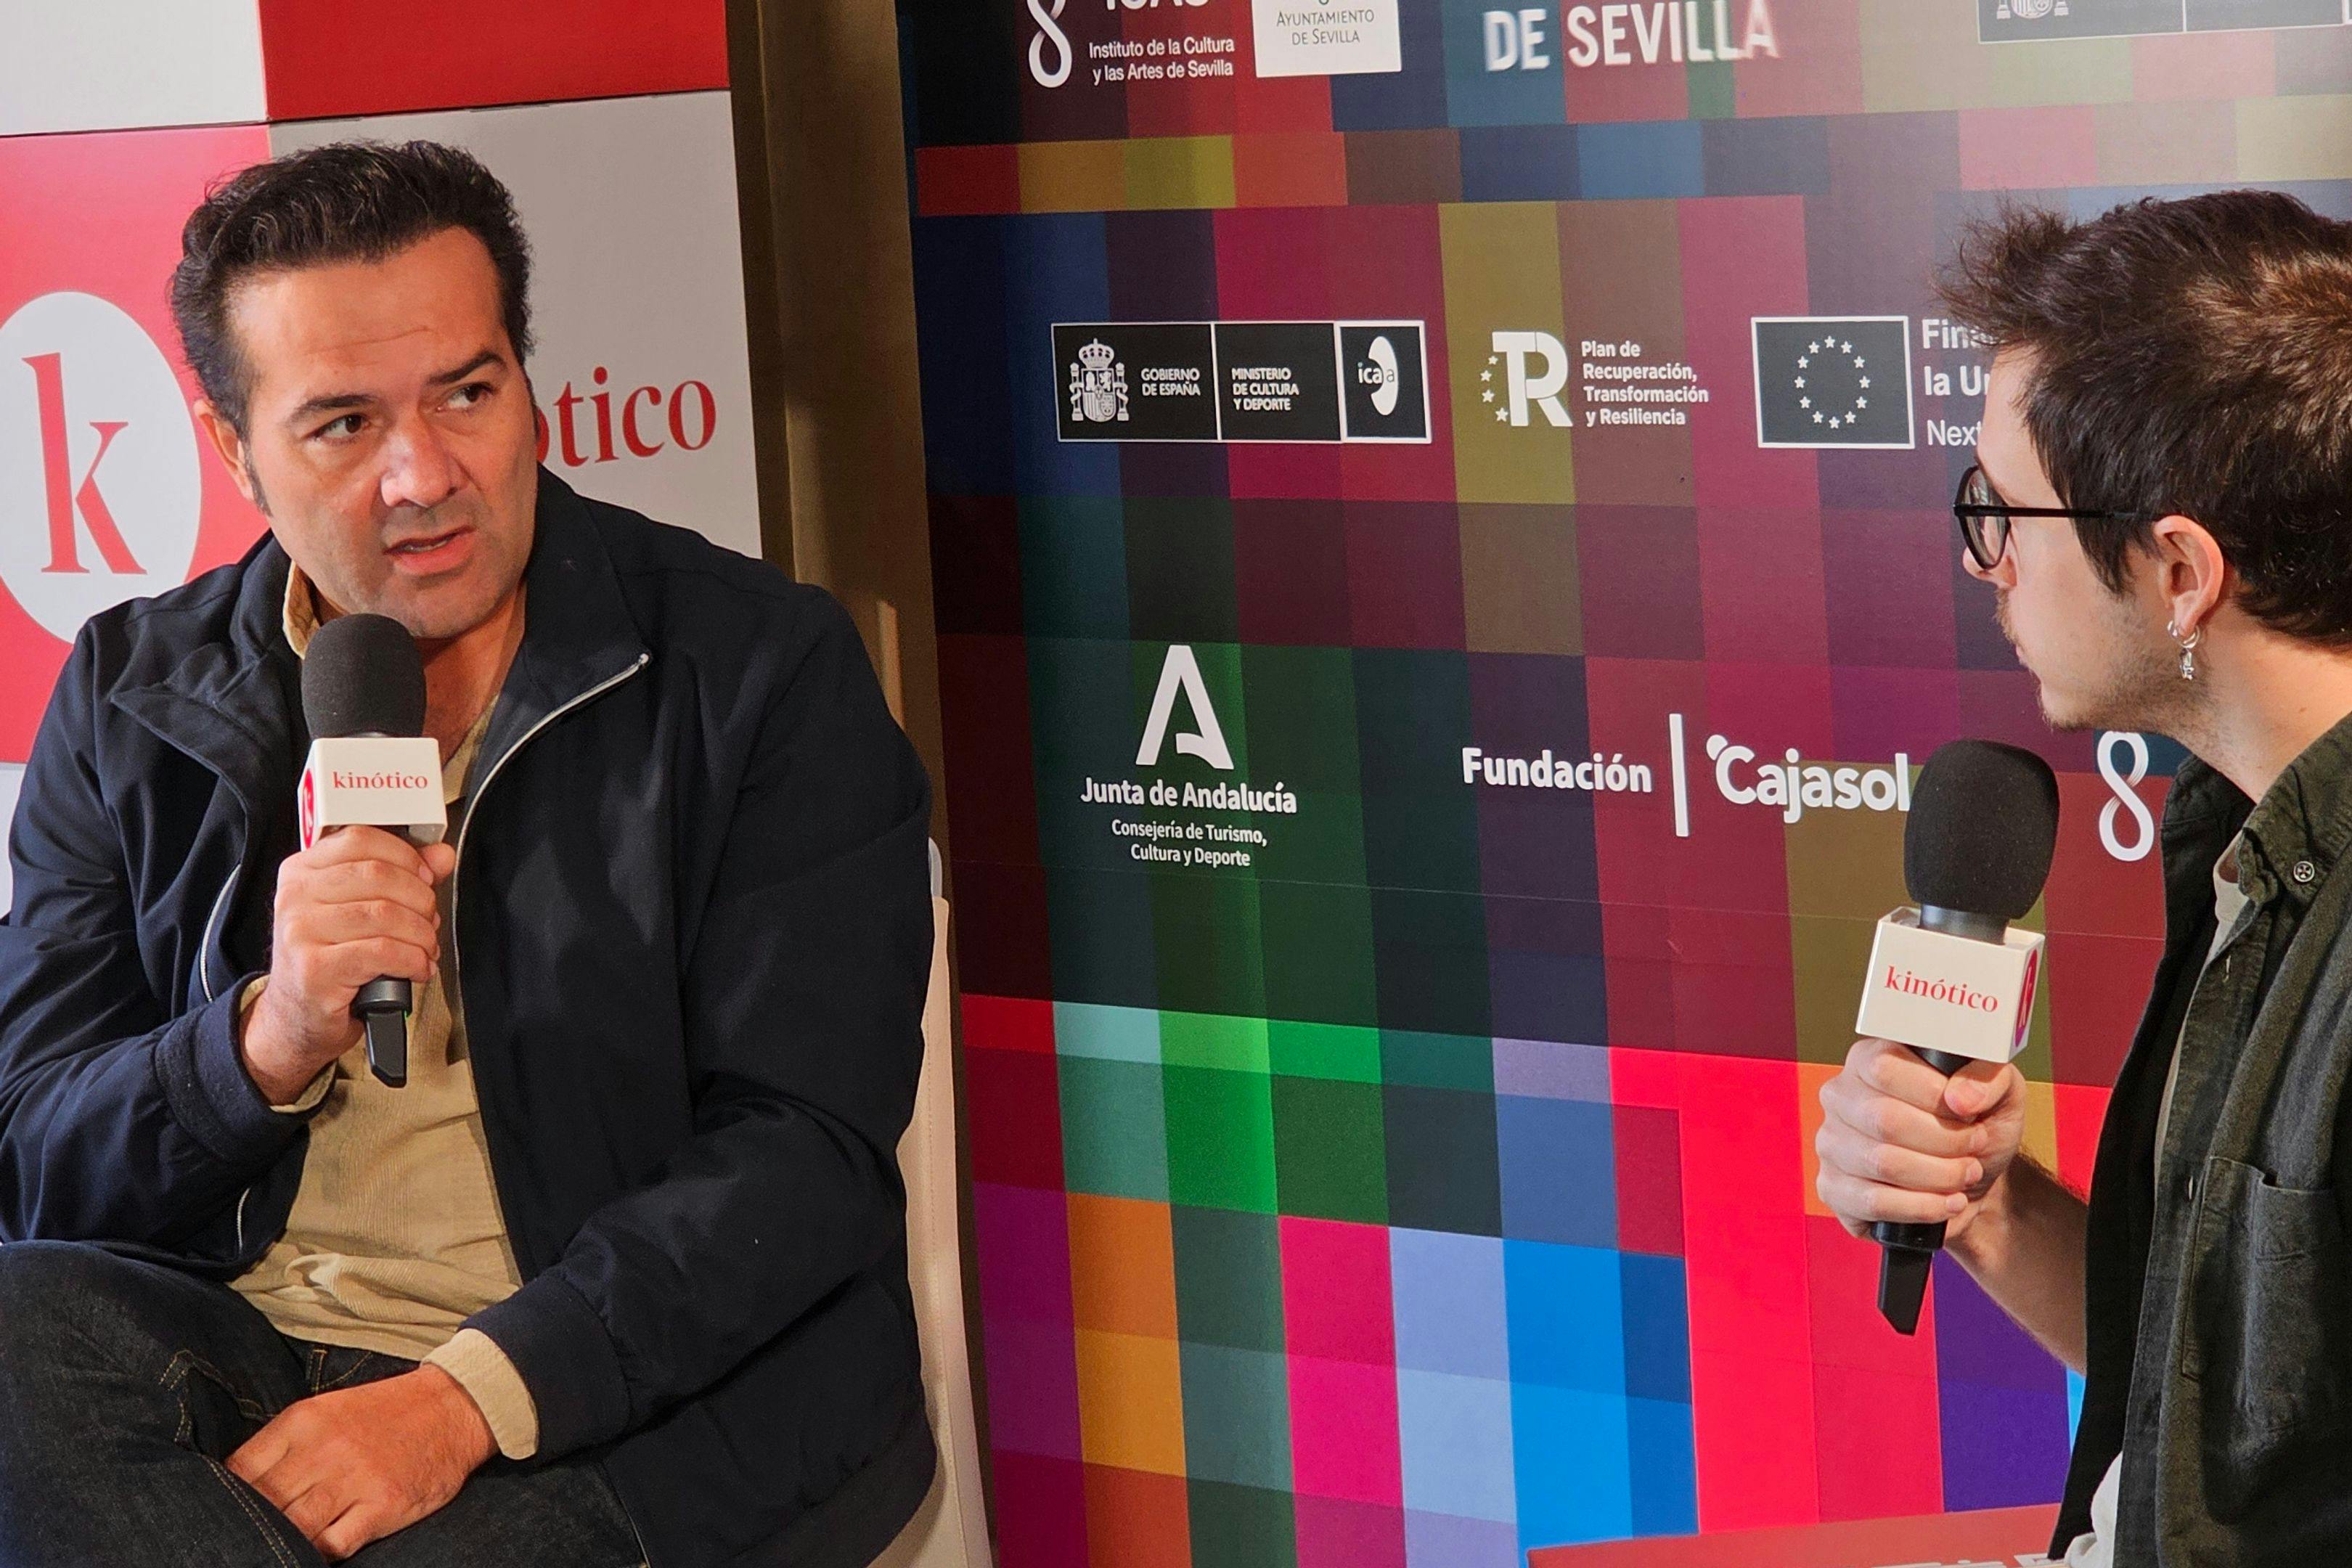 El director y productor Alfonso Sánchez es entrevistado en el set de Kinótico en el Festival de Sevilla